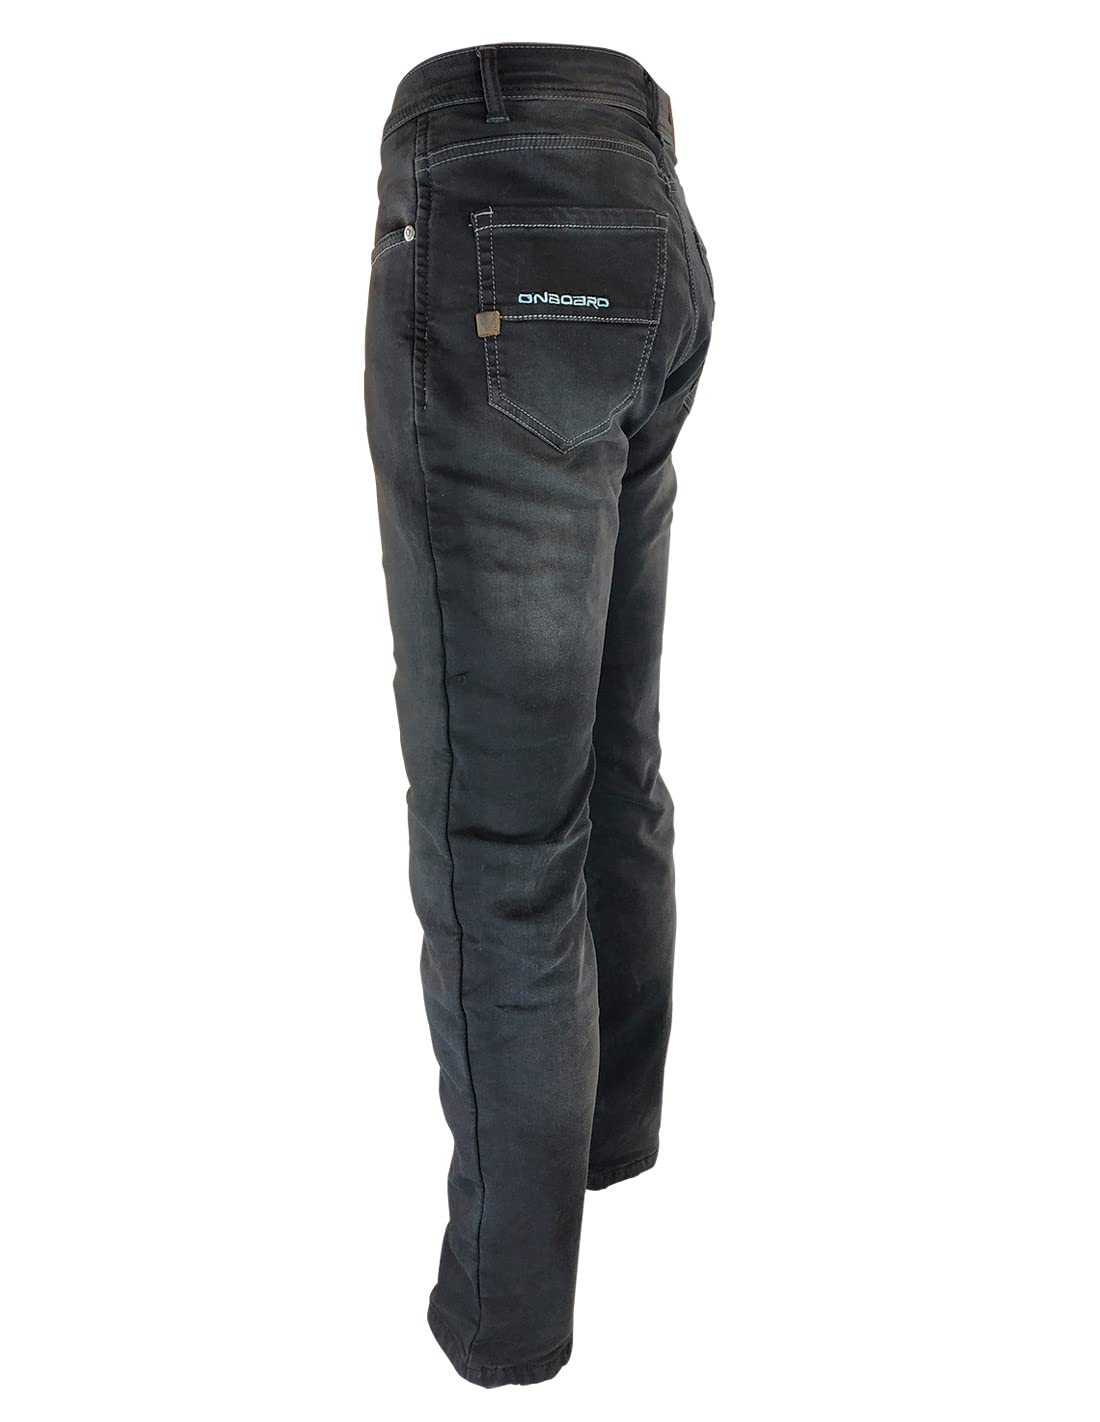 ON BOARD Concept Jeanshose mit Protektoren, Herren, 42, dunkelblau von ON BOARD